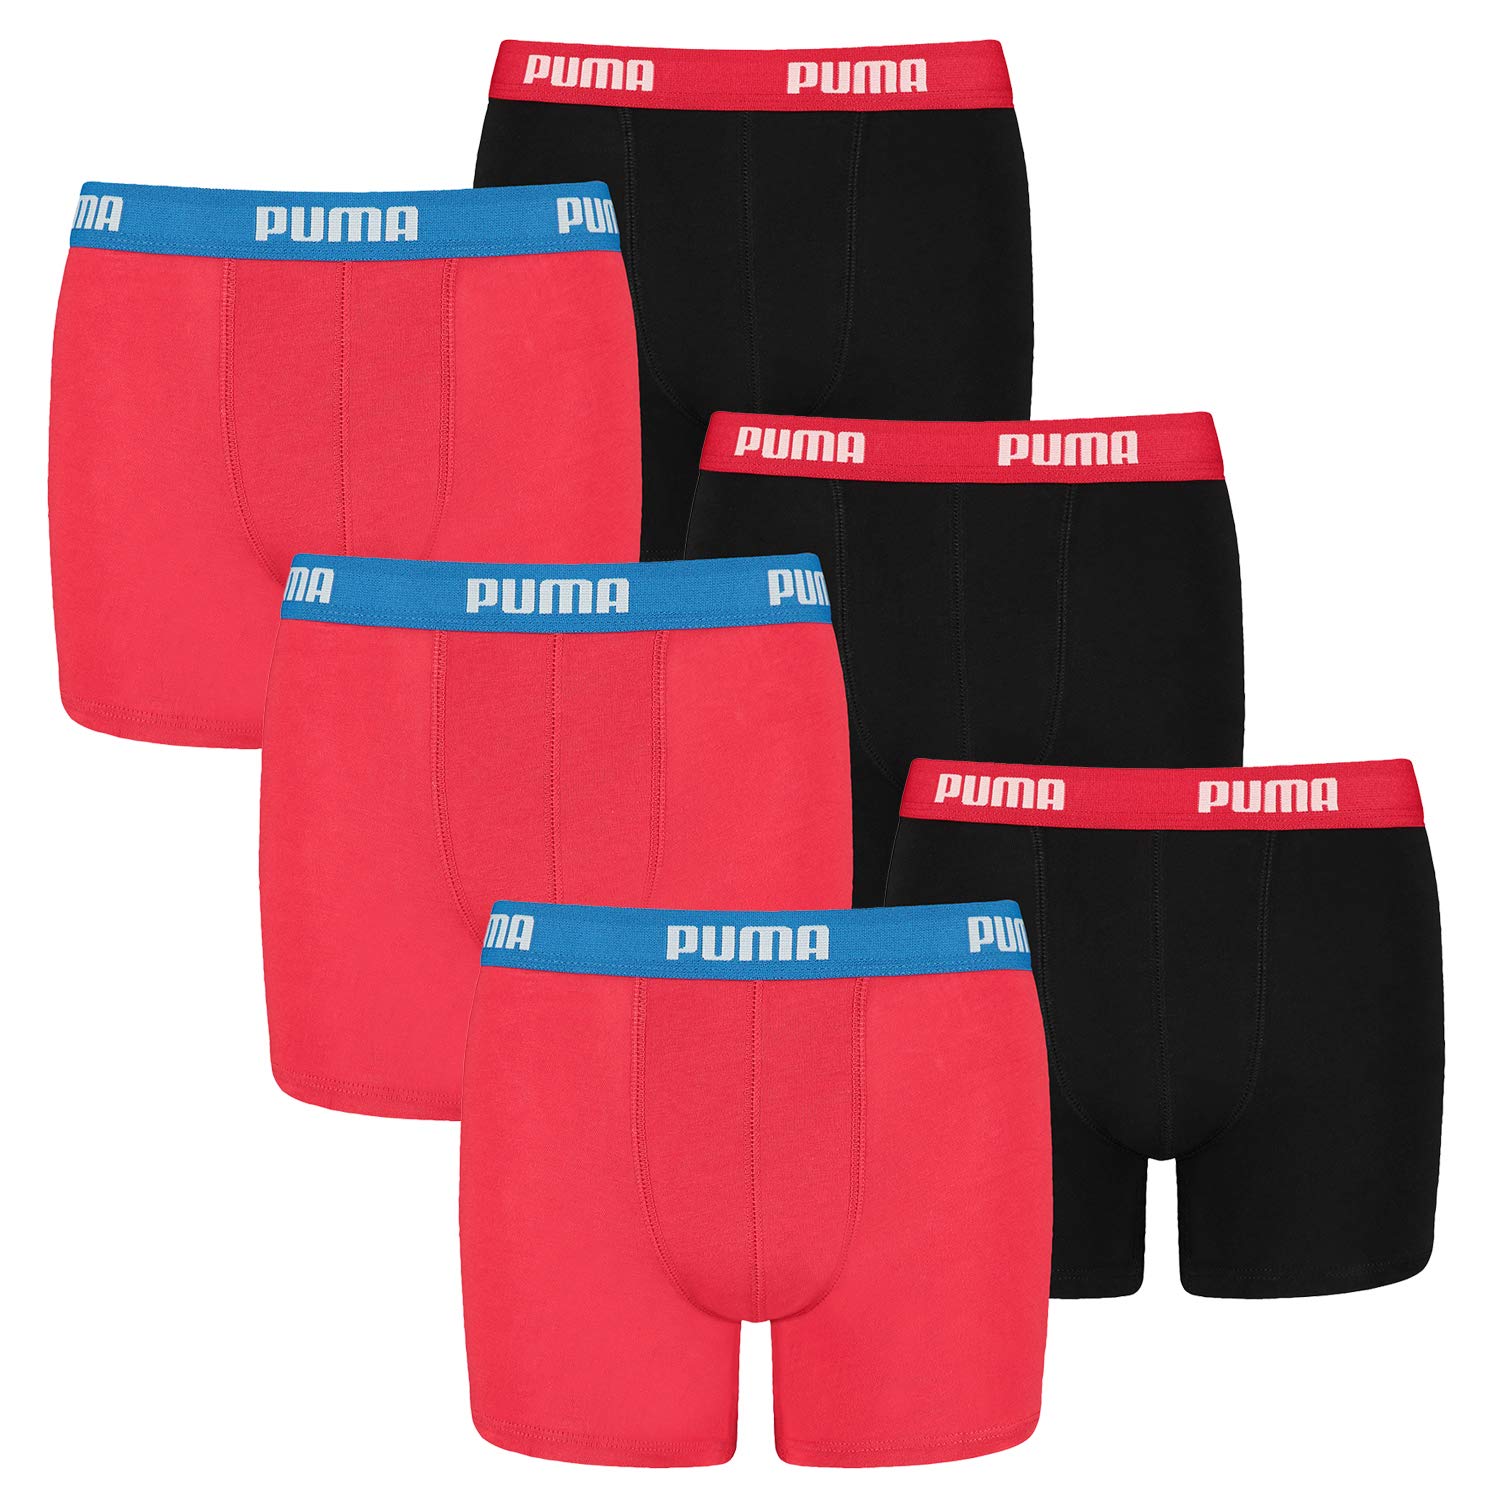 PUMA 4 er Pack Boxer Boxershorts Jungen Kinder Unterhose Unterwäsche, Farbe:786 - Red/Black, Bekleidung:176